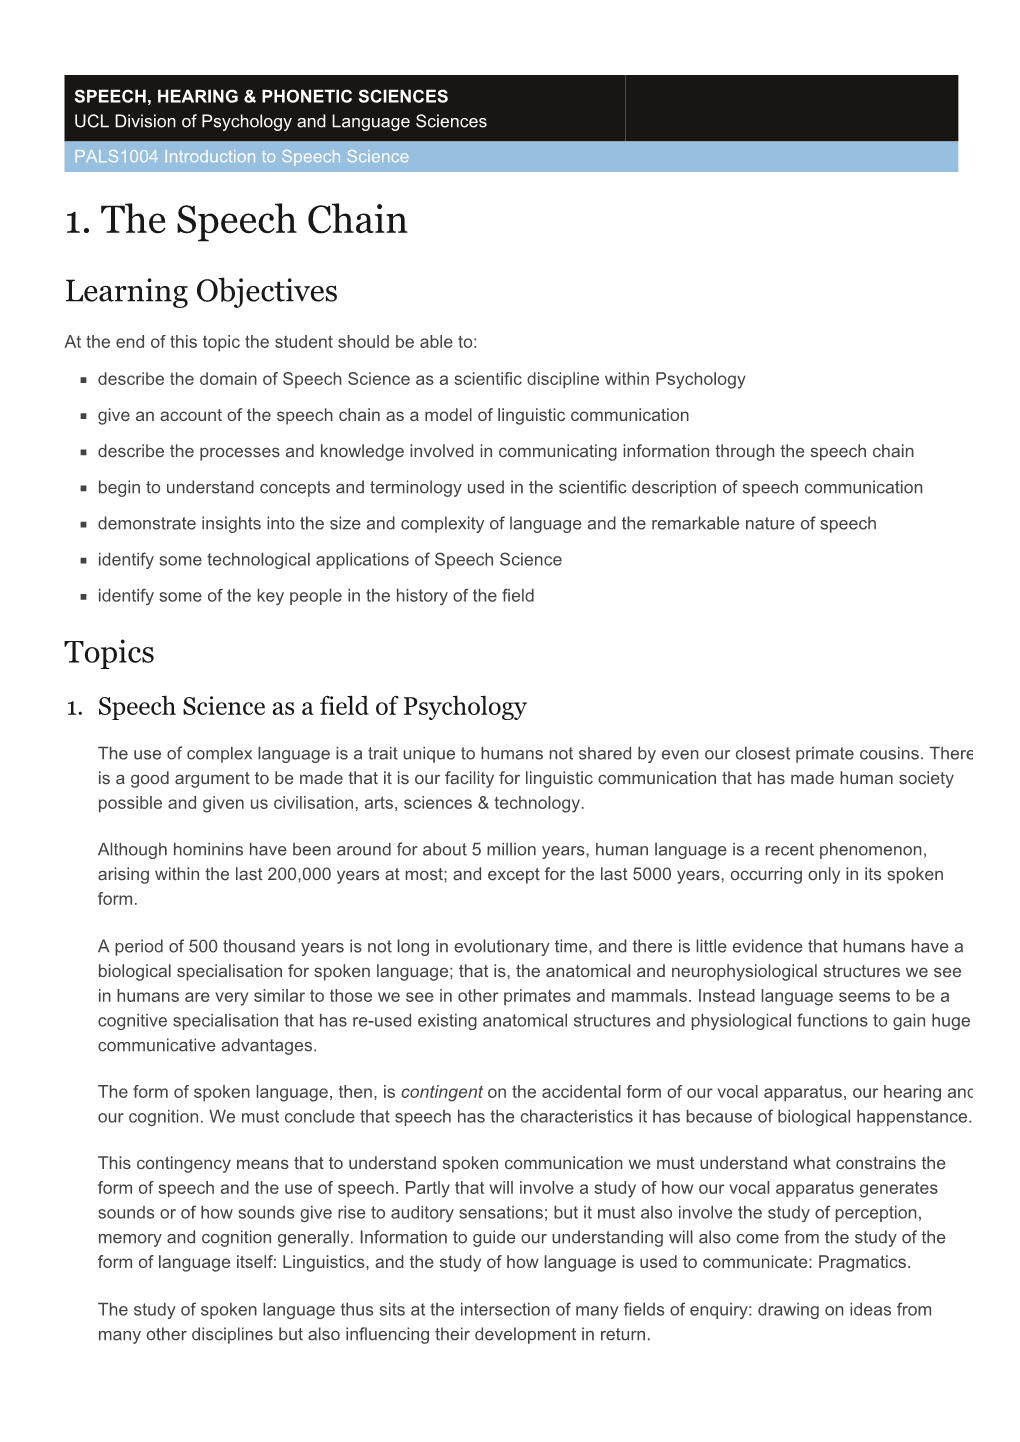 1. the Speech Chain